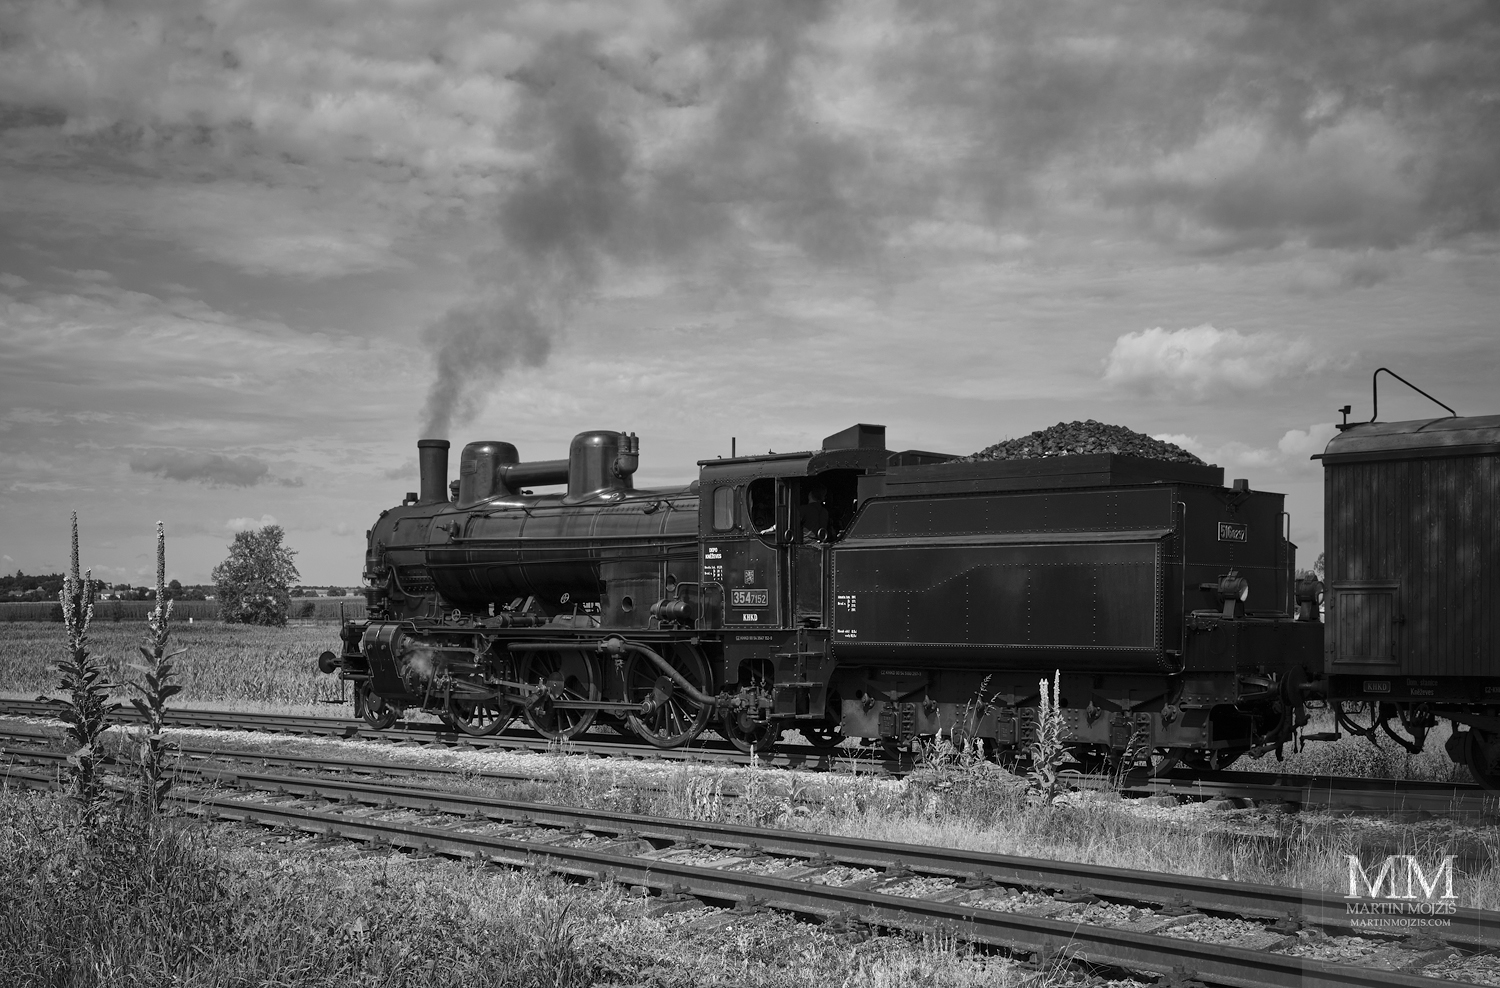 Parní vlak na kolejích, kvetoucí divizny. Umělecká černobílá fotografie s názvem U DIVIZEN. Fotograf Martin Mojžíš.